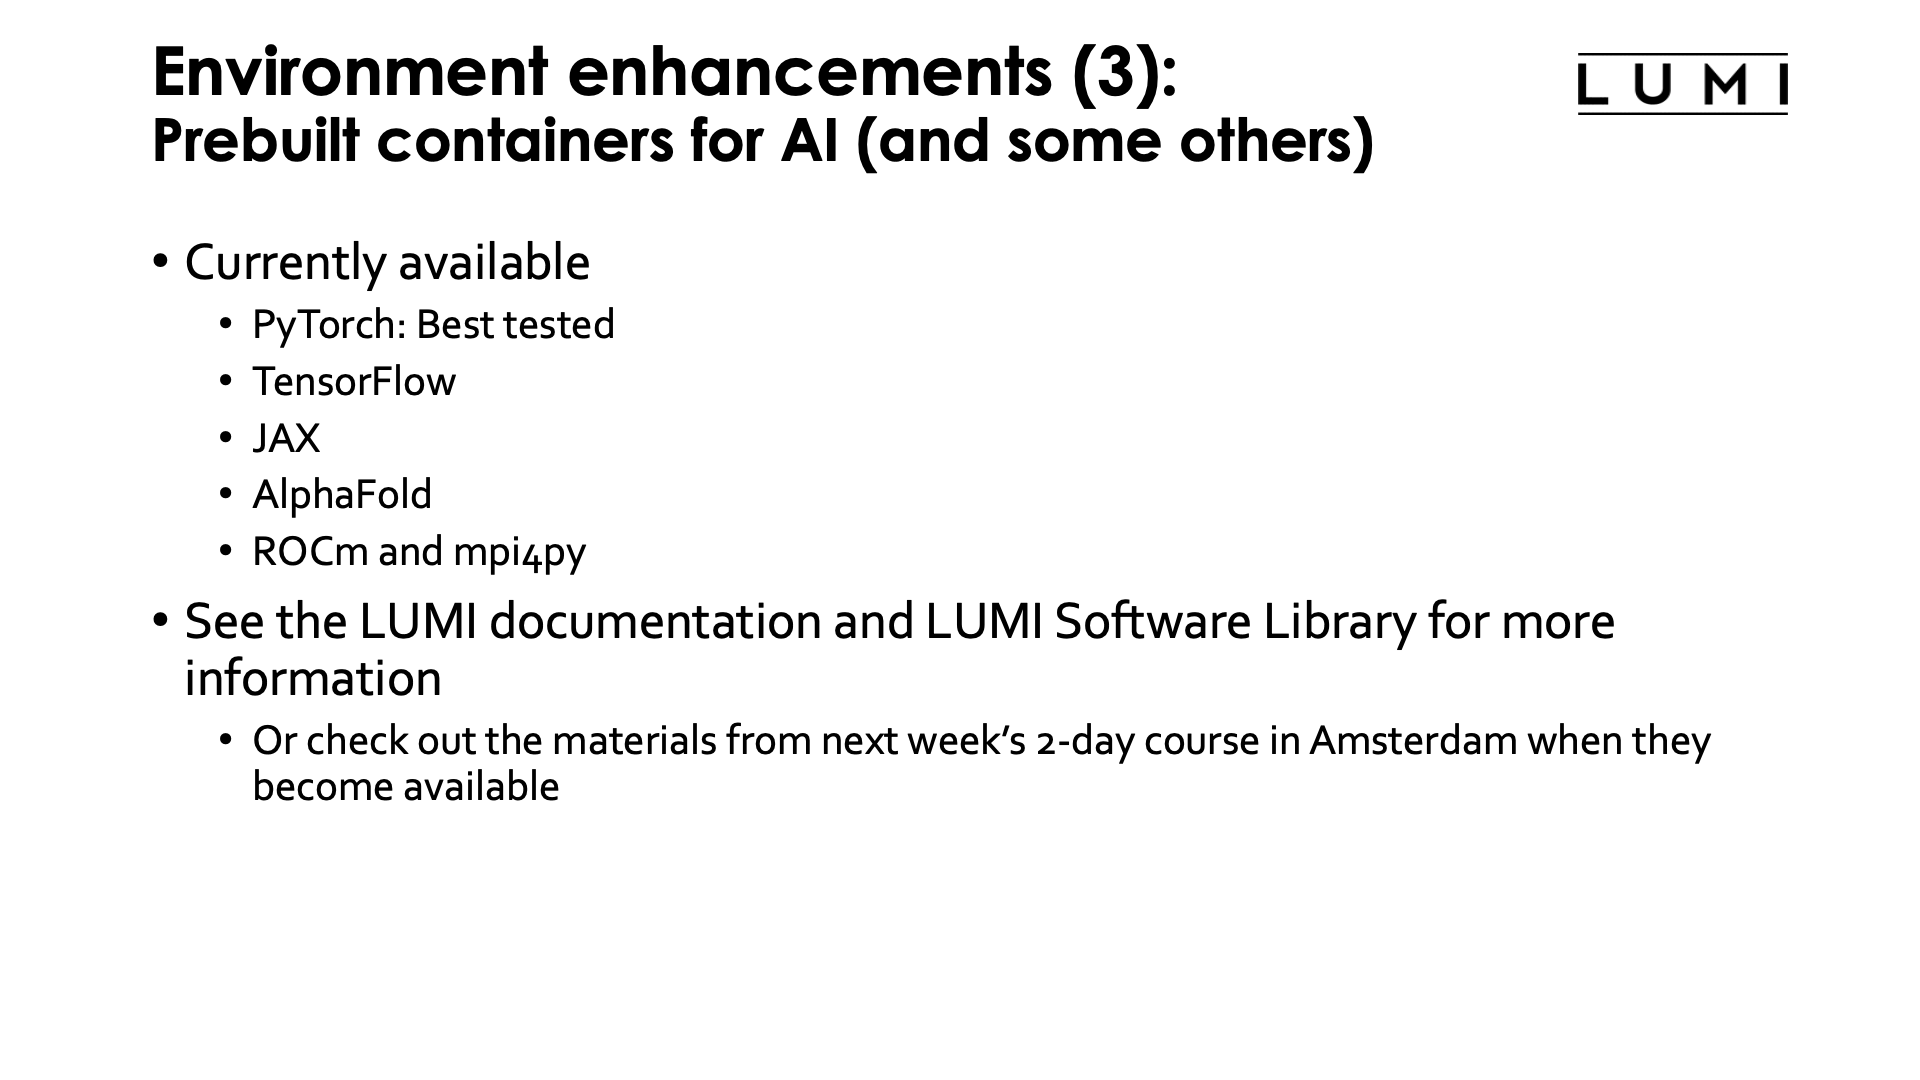 Environment enhancements (3): Prebuilt AI containers